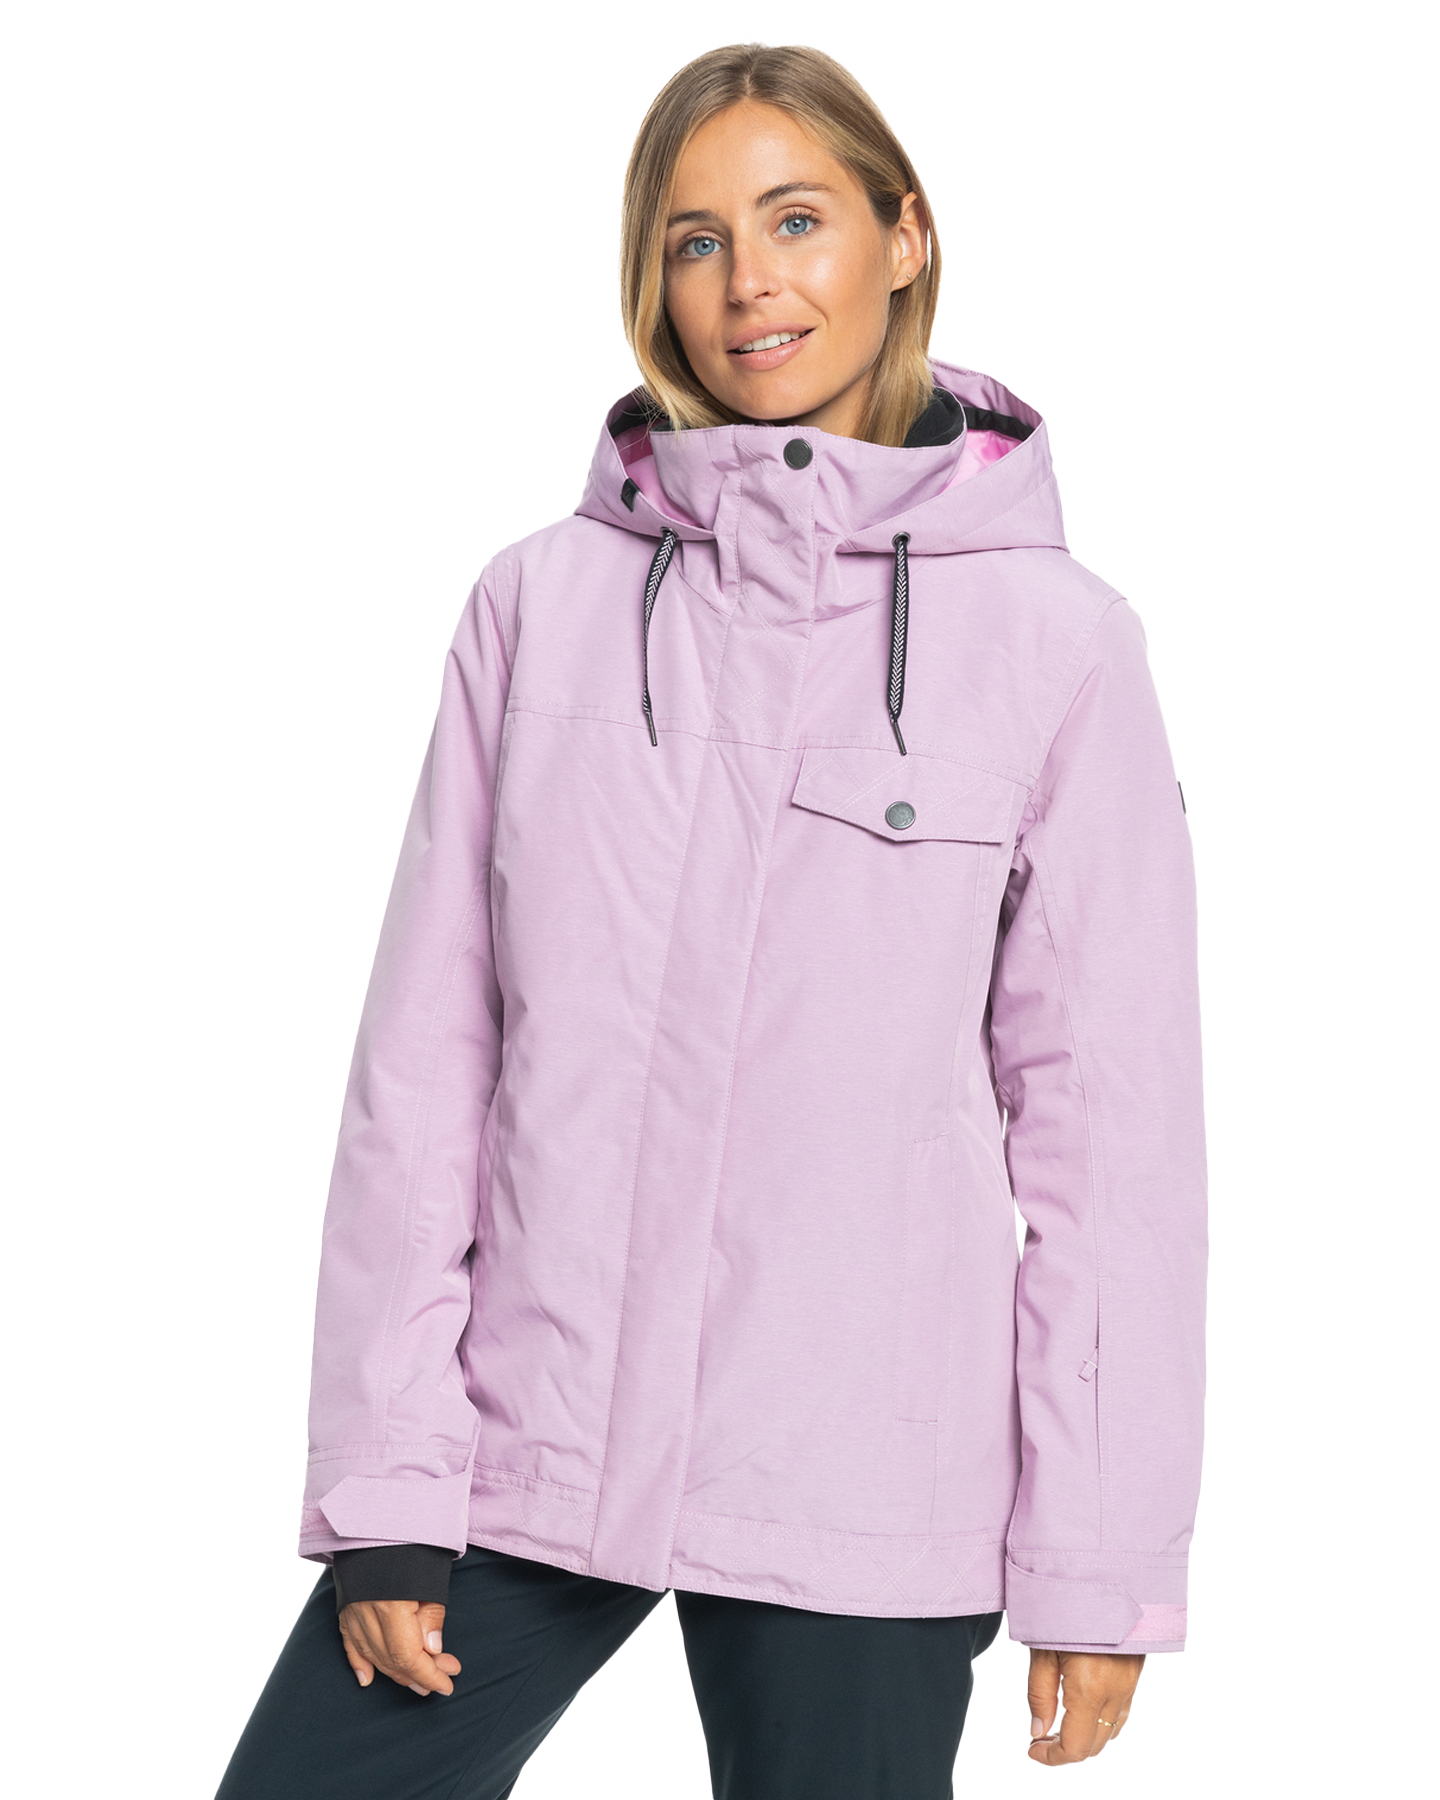 Roxy Women's Billie Technical Snow Jacket - Pink Frosting Women's Snow Jackets - Trojan Wake Ski Snow